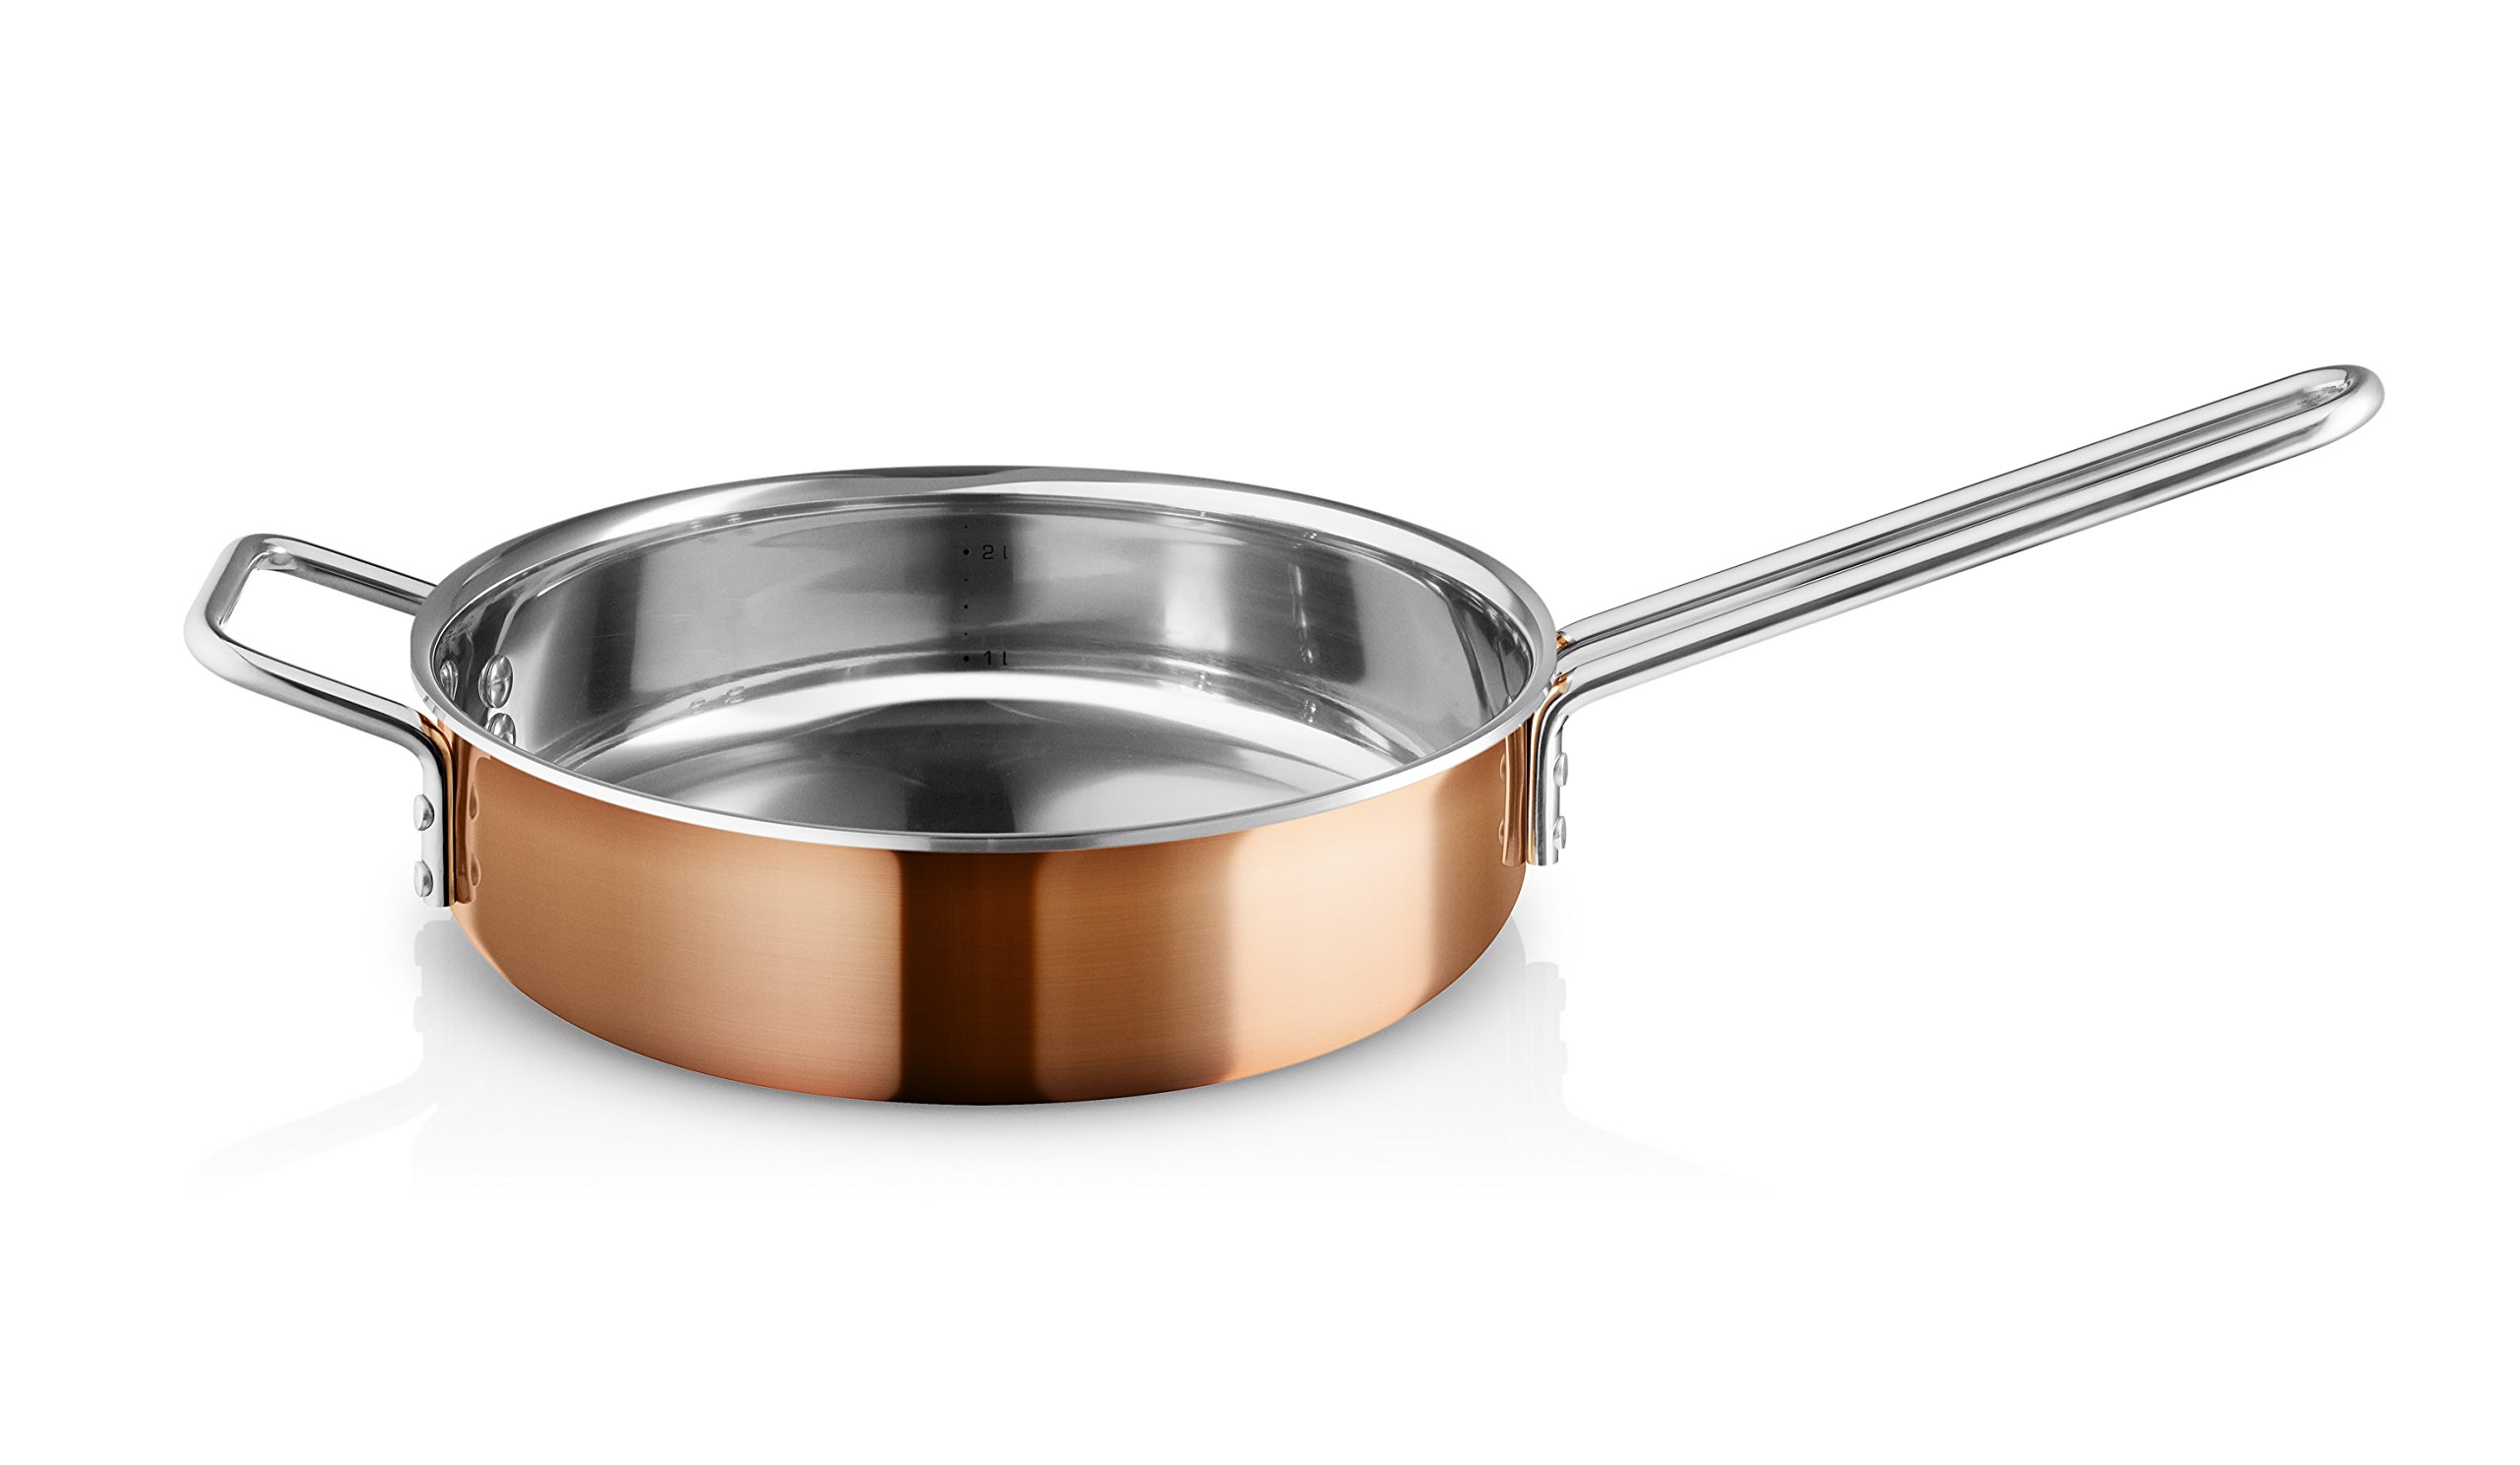 EVA-TRIO | Sautierpfanne 24cm Kupfer | Drei-Schichten-Konstruktion aus Kupfer, Aluminium und Edelstahl | Copper